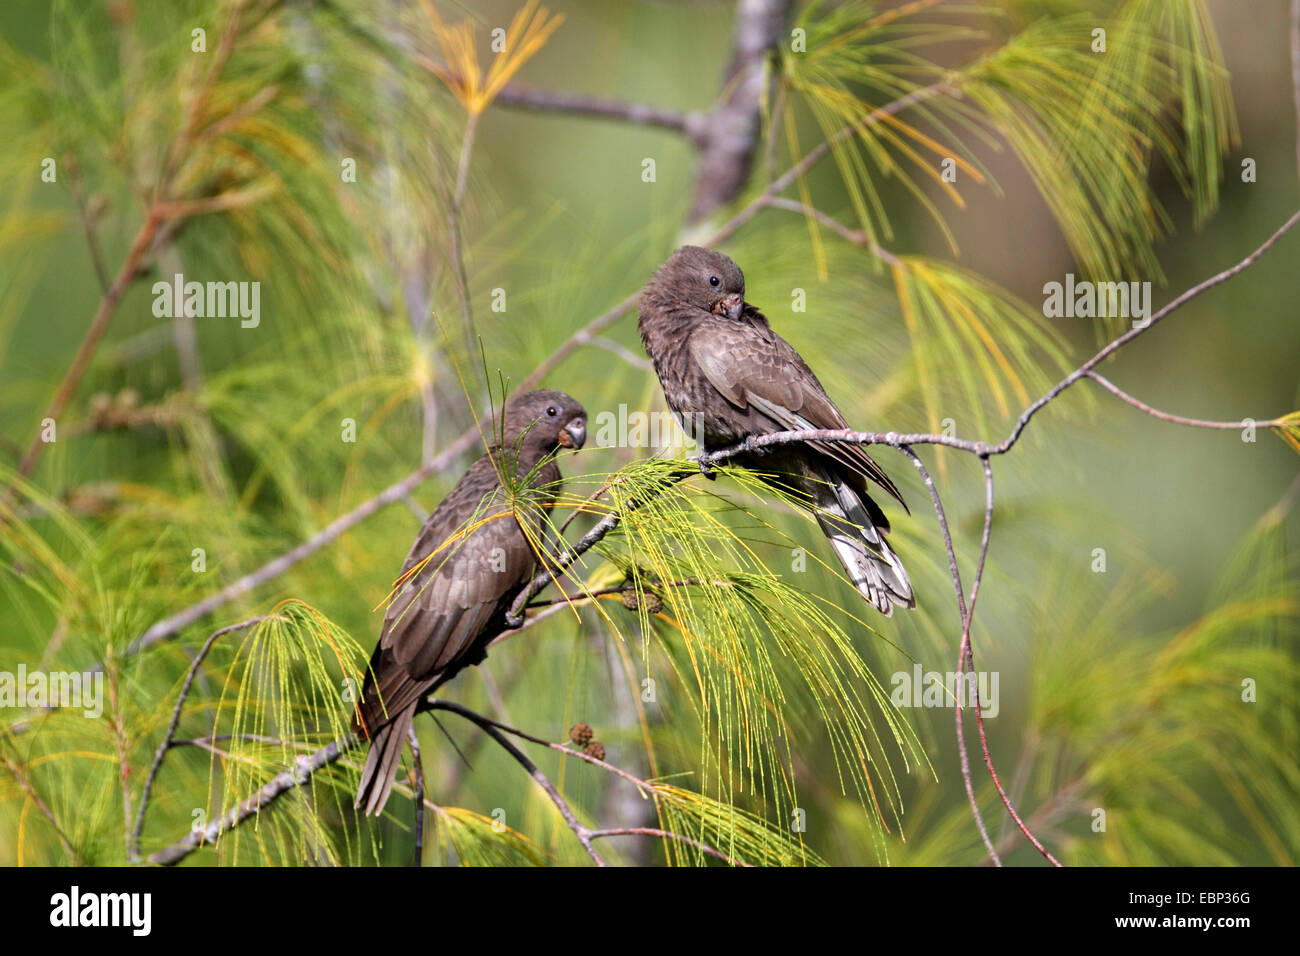 Black parrot (Coracopsis nigra), two adult birds sitting in a she-oak, Seychelles, Praslin Stock Photo